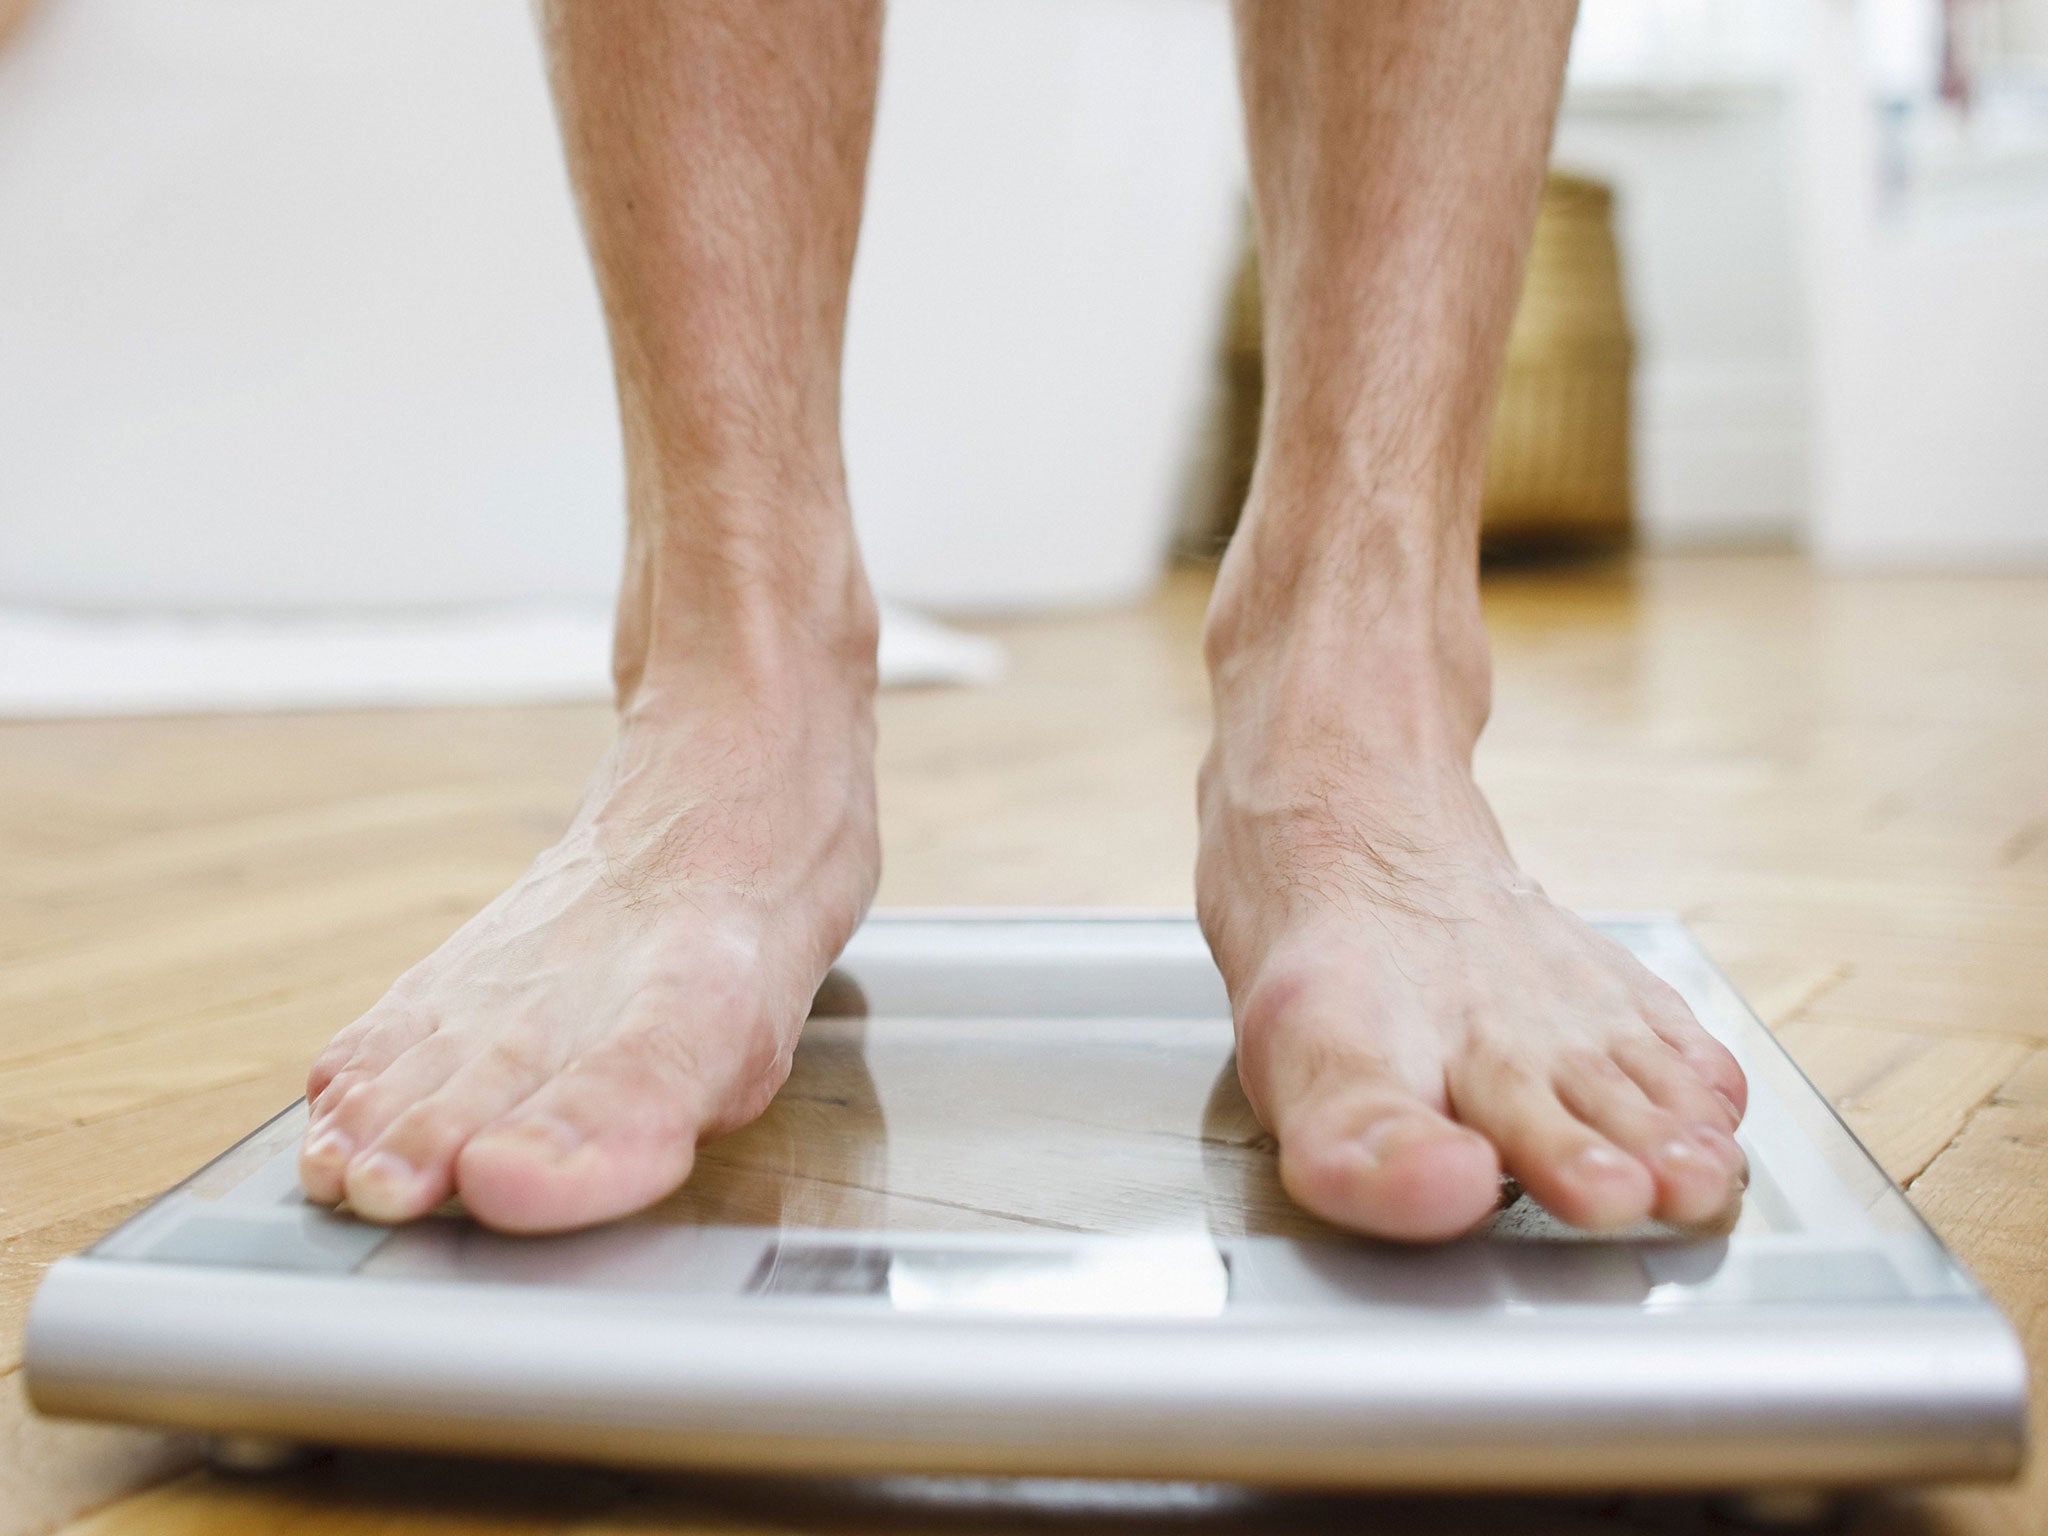 Man weighing himself on bathroom scales